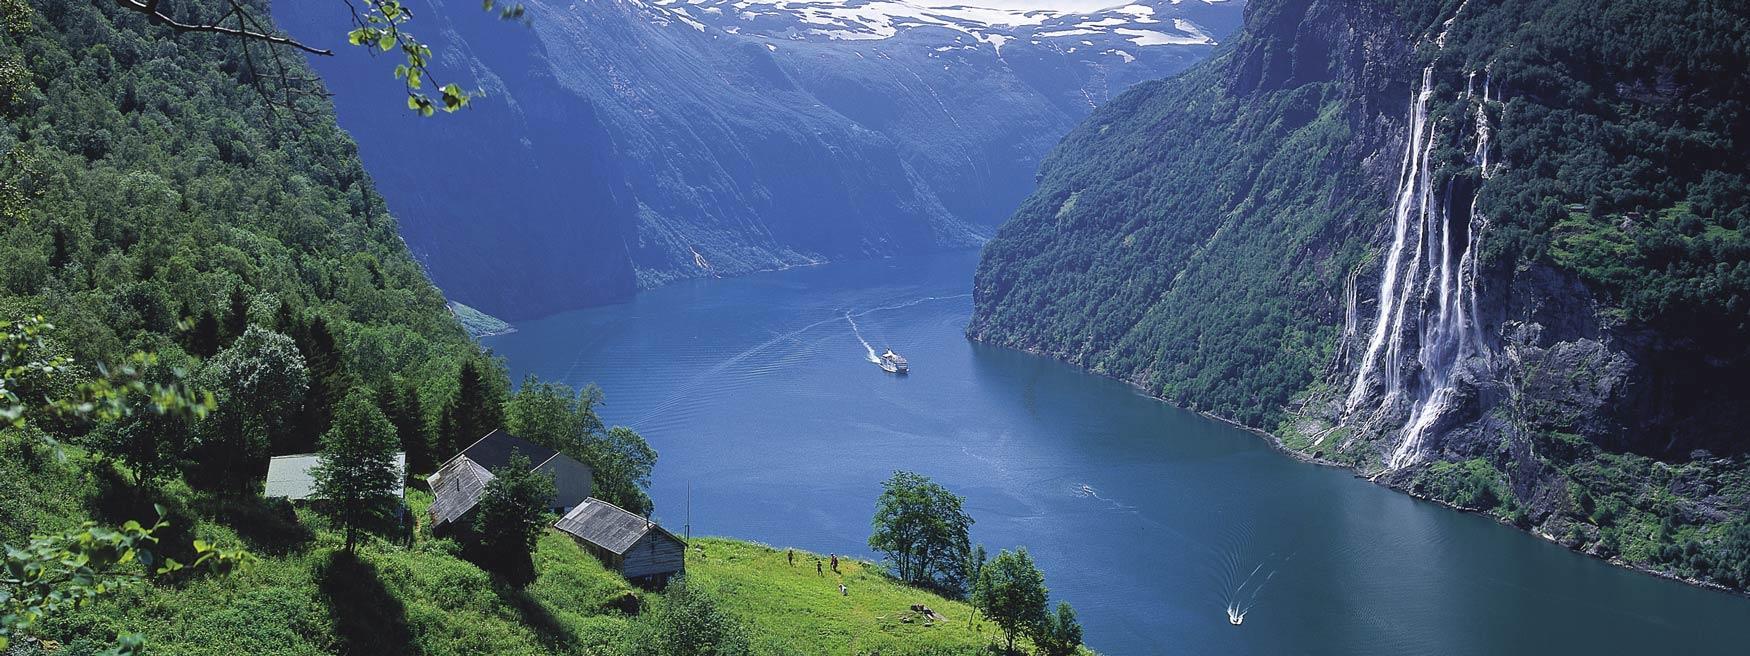 Norvegia, tour dei fiordi. partenze garantite 2019